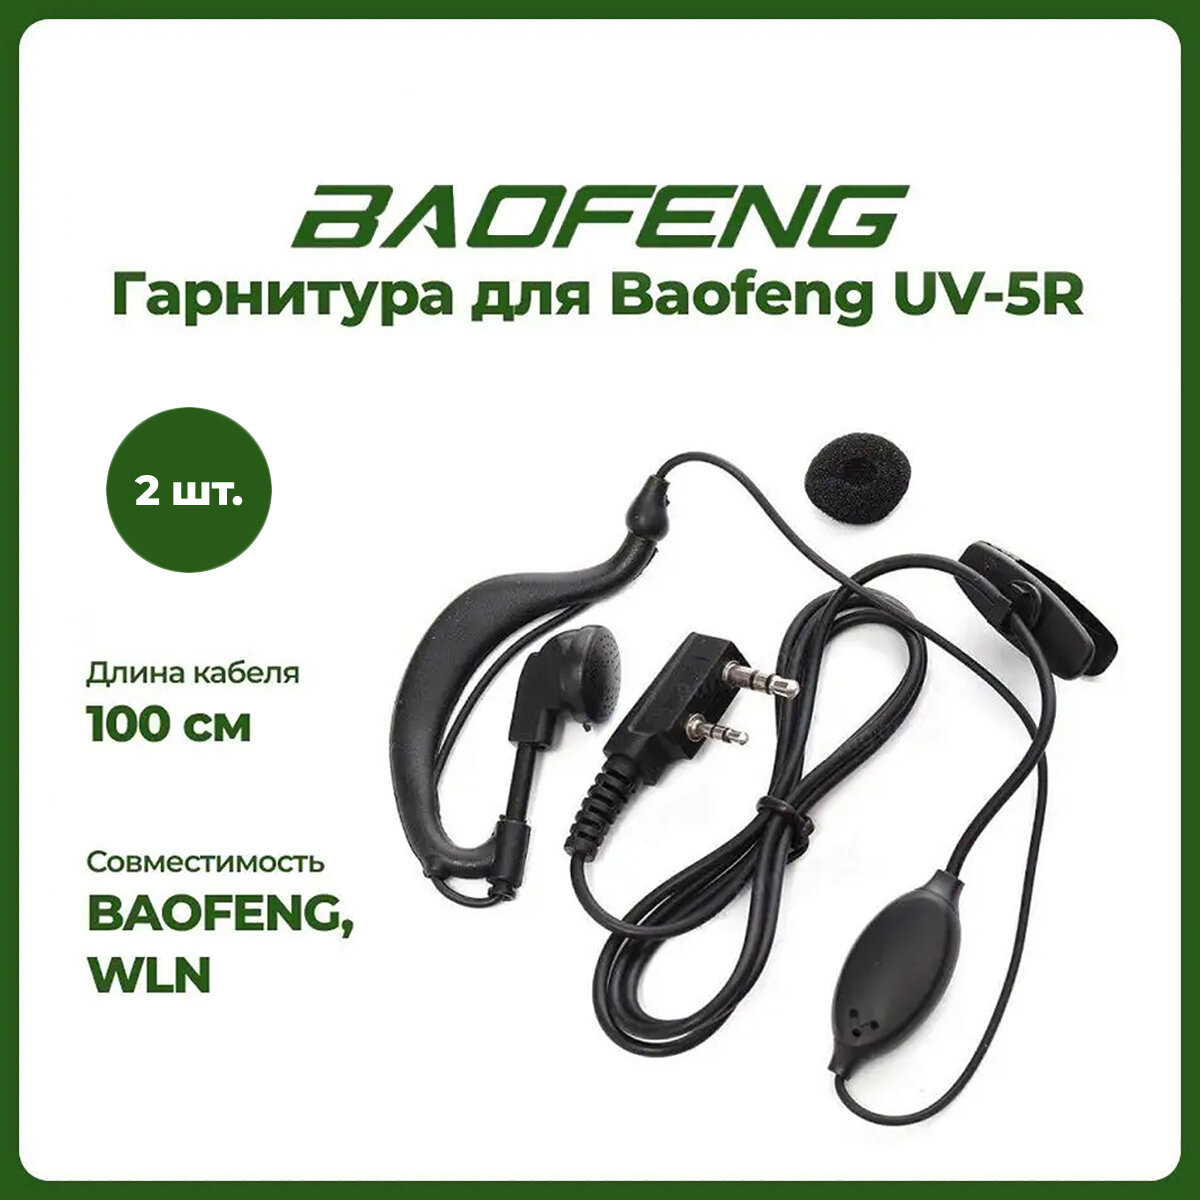 Гарнитура для рации Baofeng UV-5R комплект 2 шт